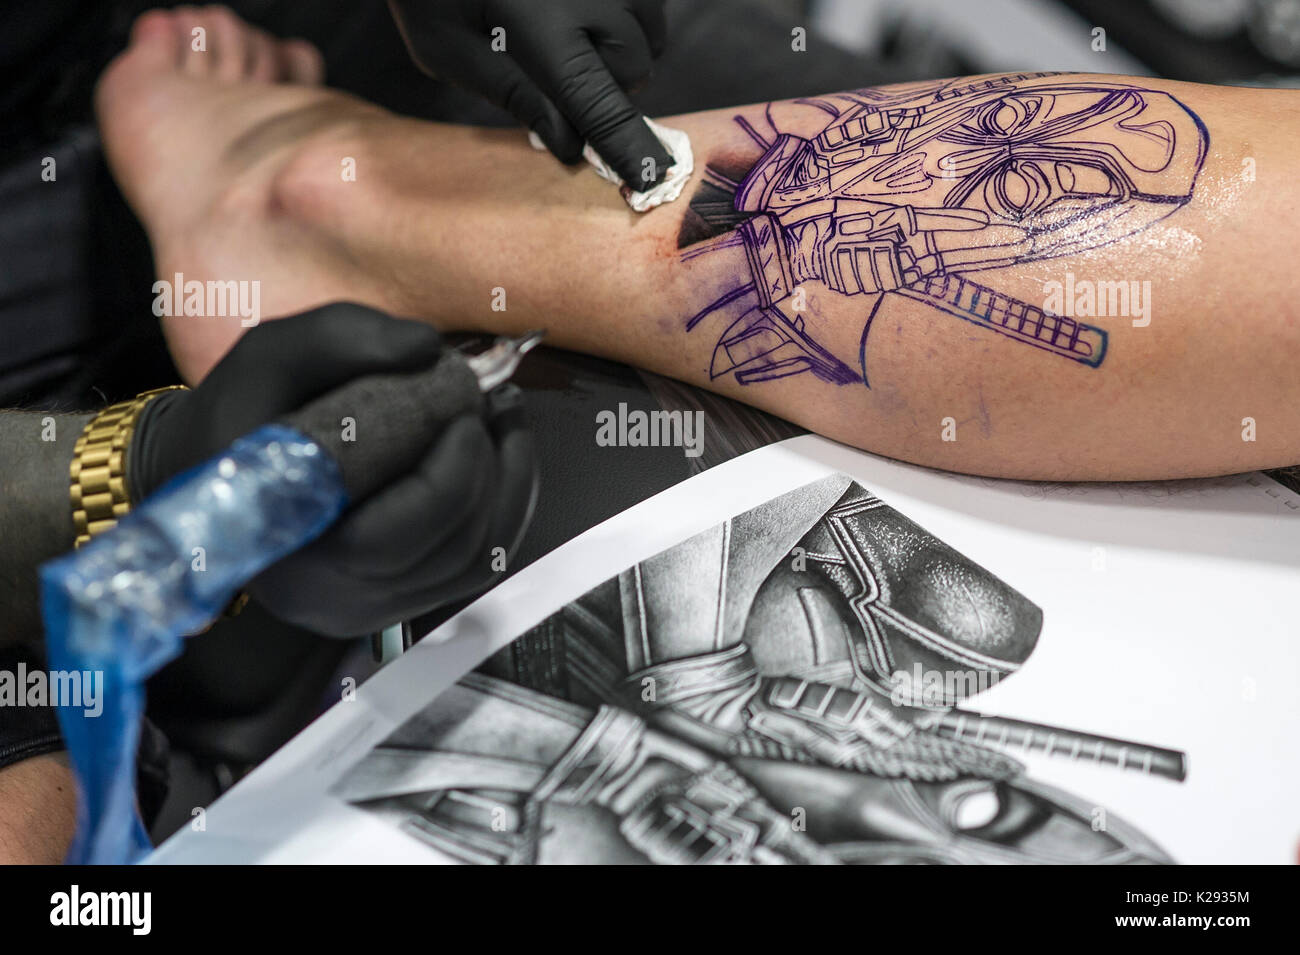 Le tatouage. Une conception d'être tatoué sur la jambe d'un client à la Convention de tatouage de Cornwall. Banque D'Images